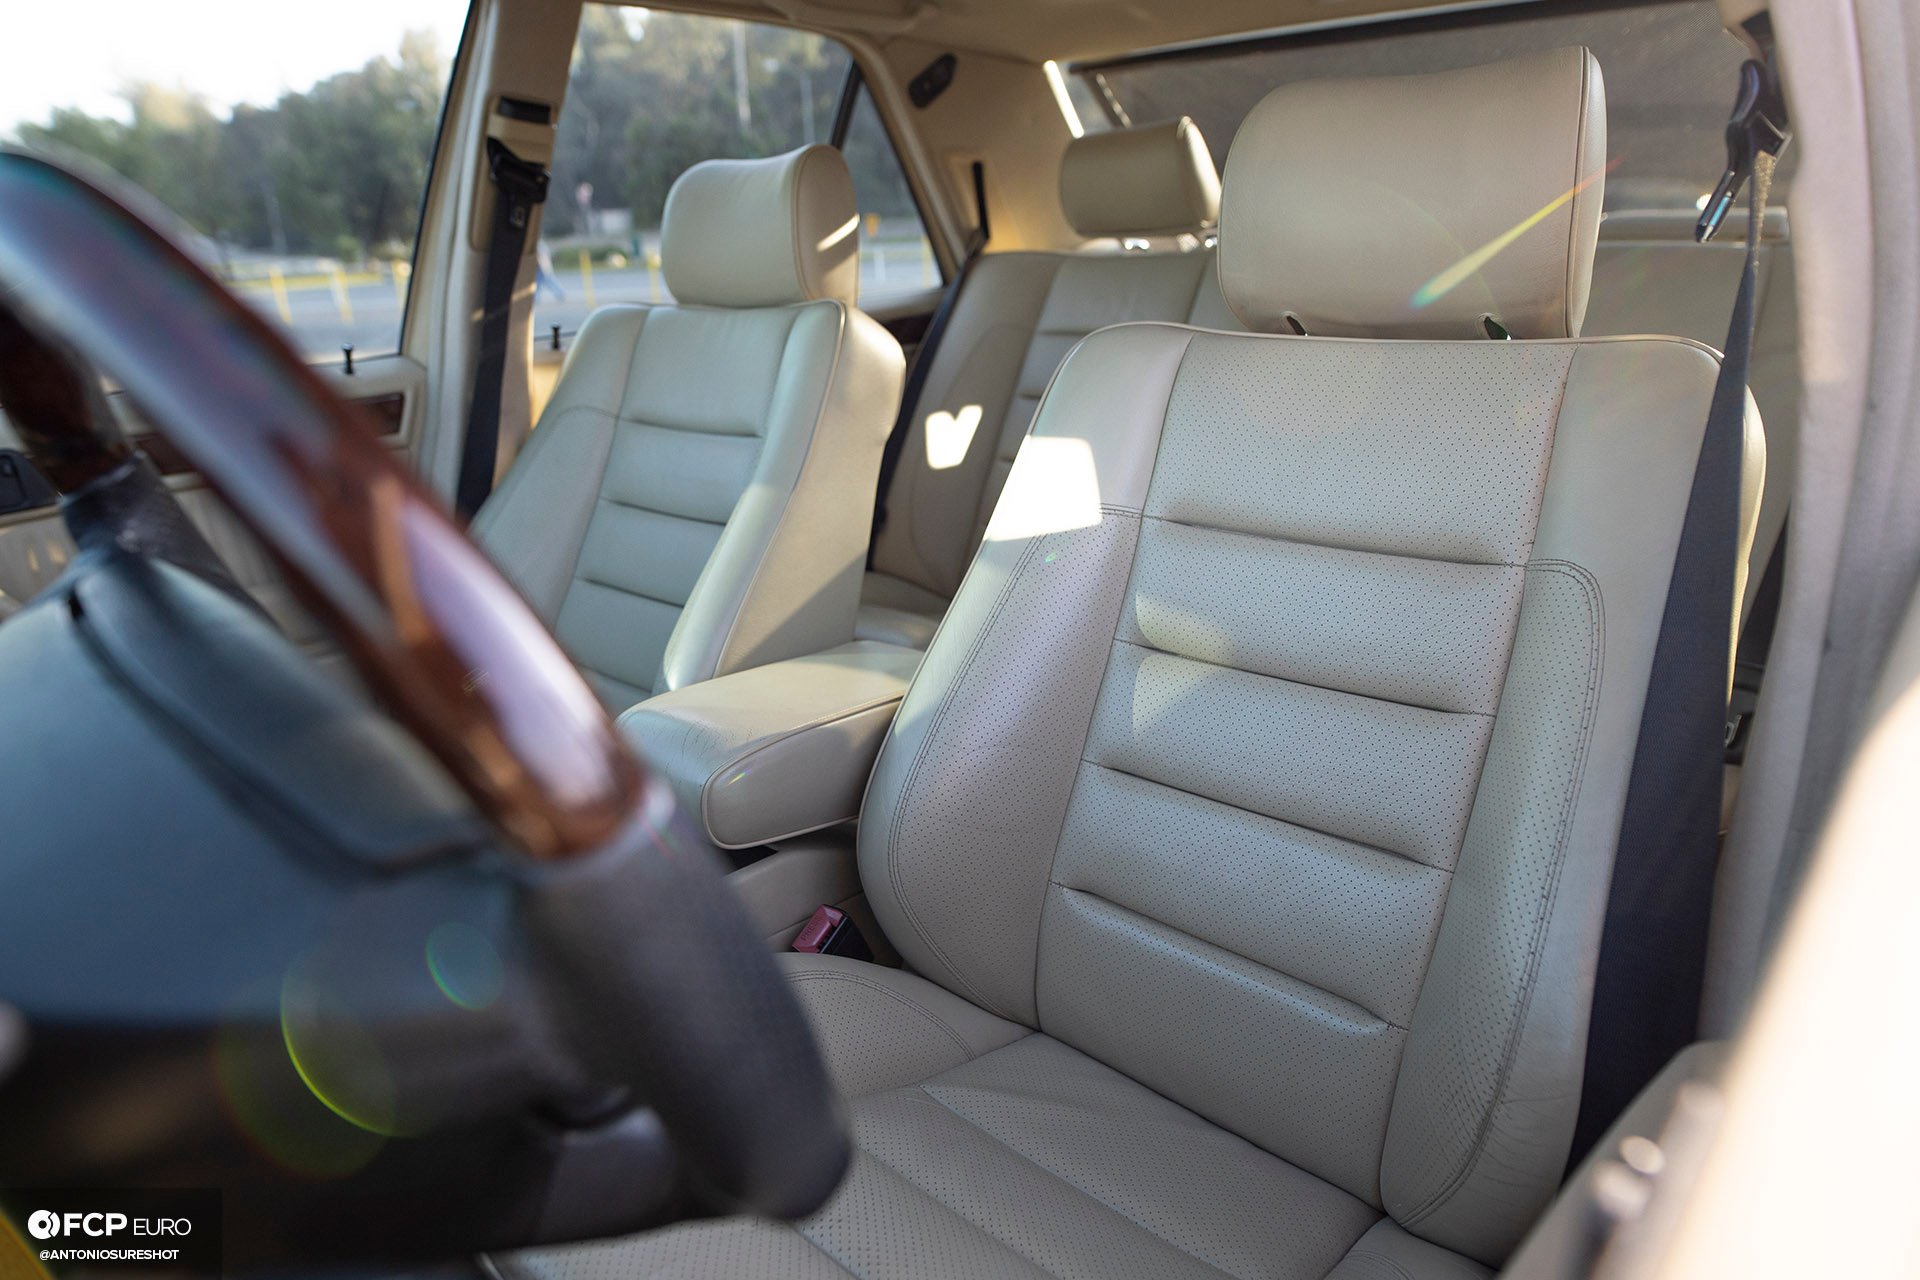 Mercedes Benz 500 E interior front seats